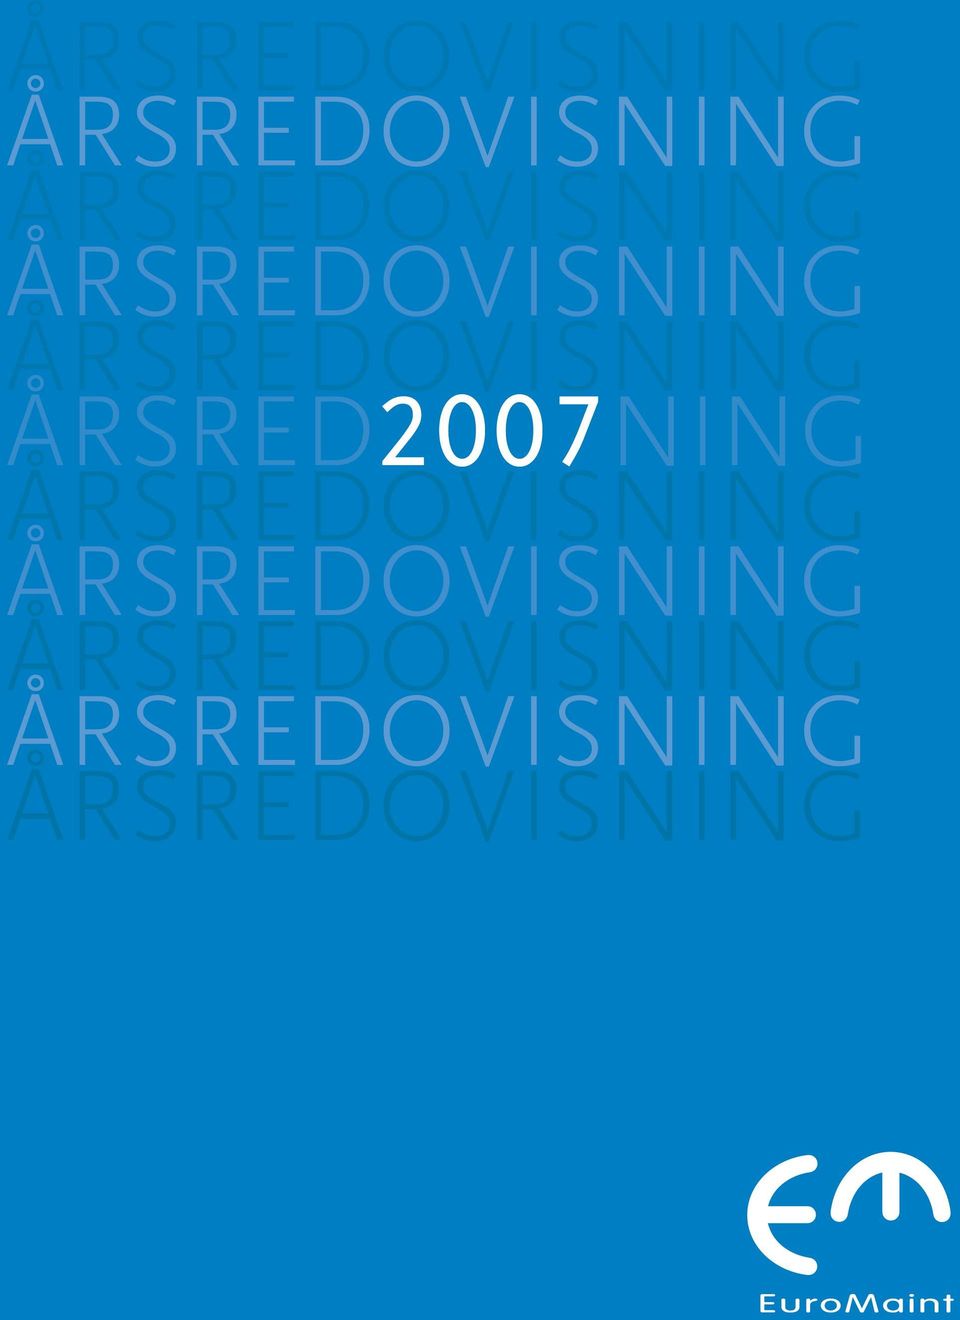 ÅRSREDOVISNING ÅRSRED2007NING  